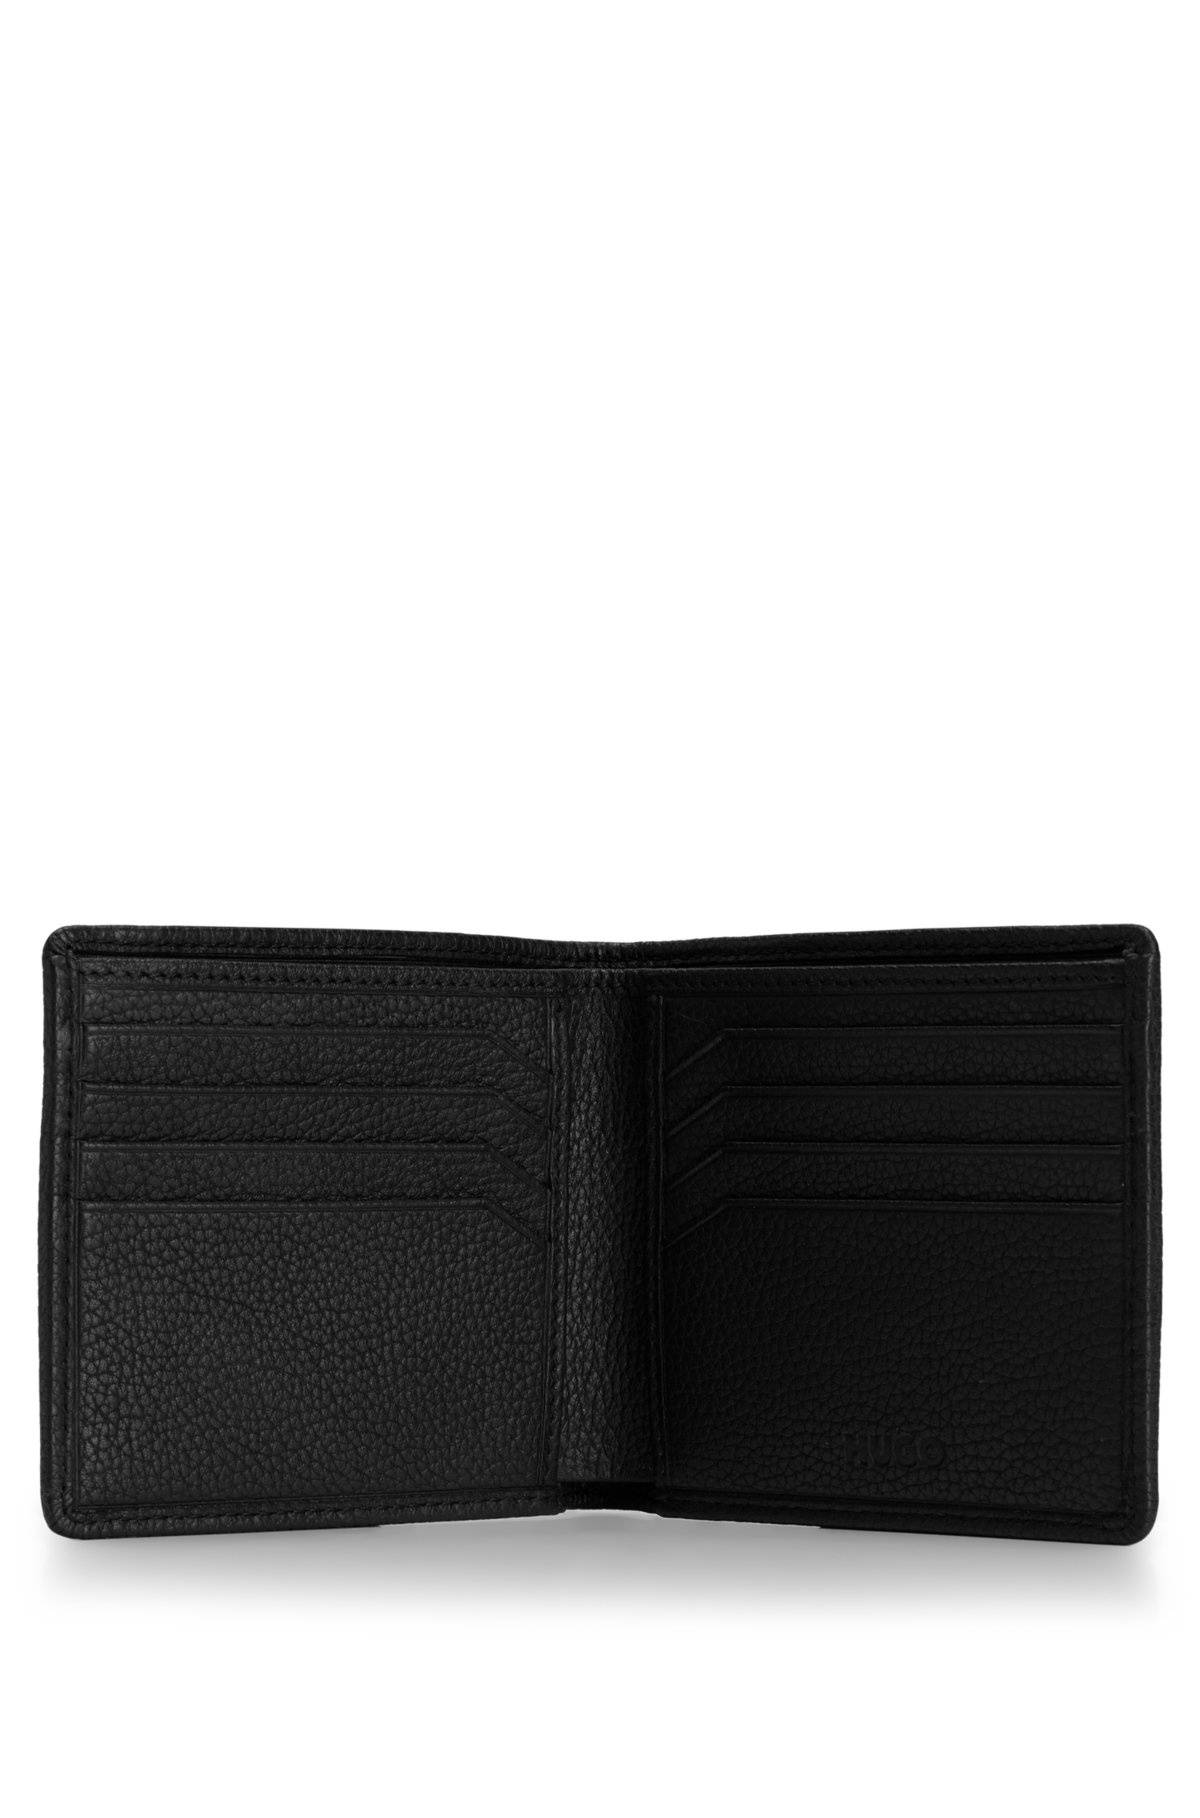 Plain Men Leather Wallet